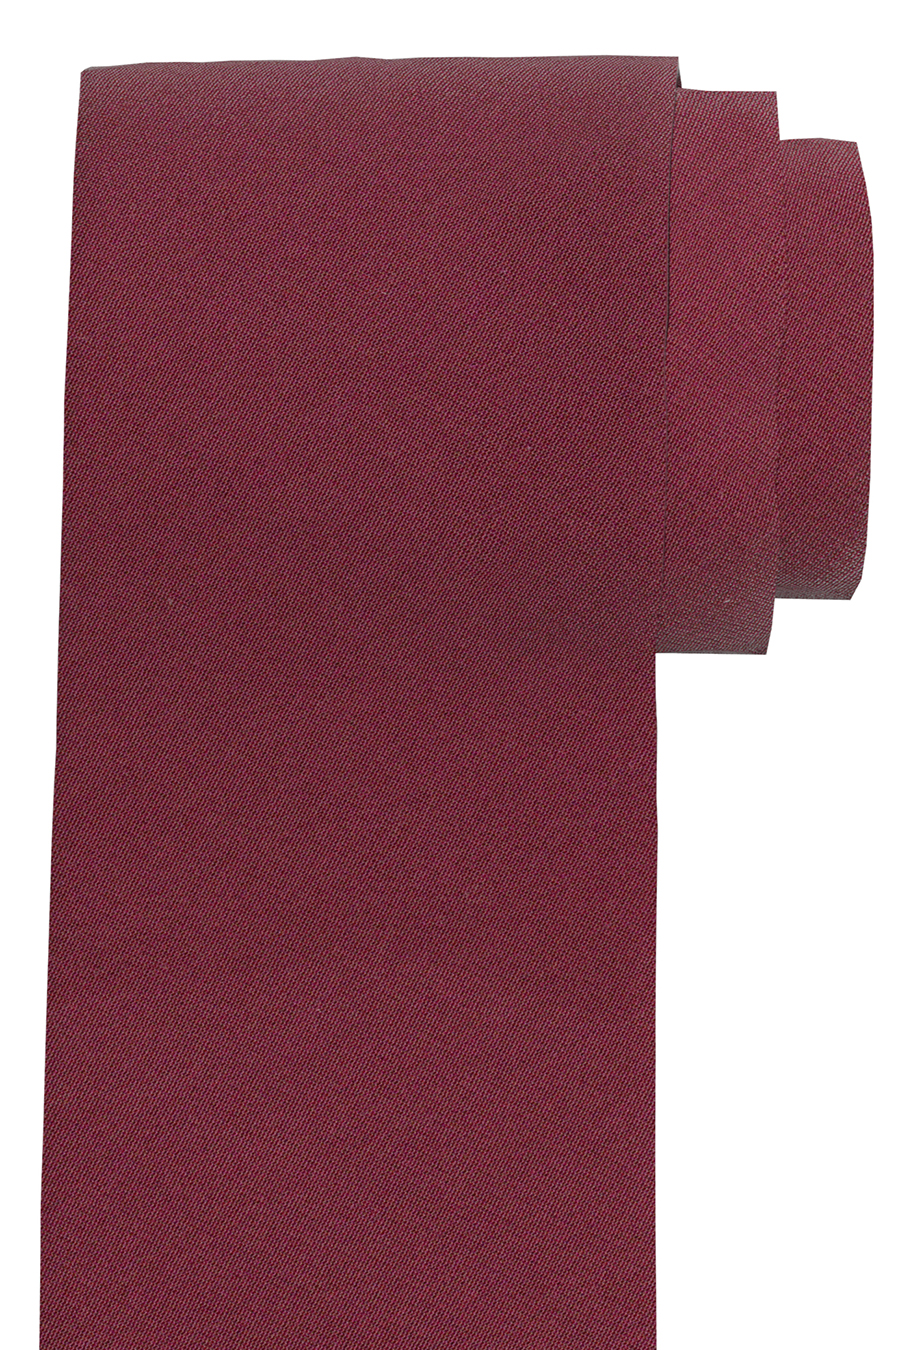 OLYMP Krawatte slim 6,5 cm breit aus reiner Seide Fleckabweisend weinrot